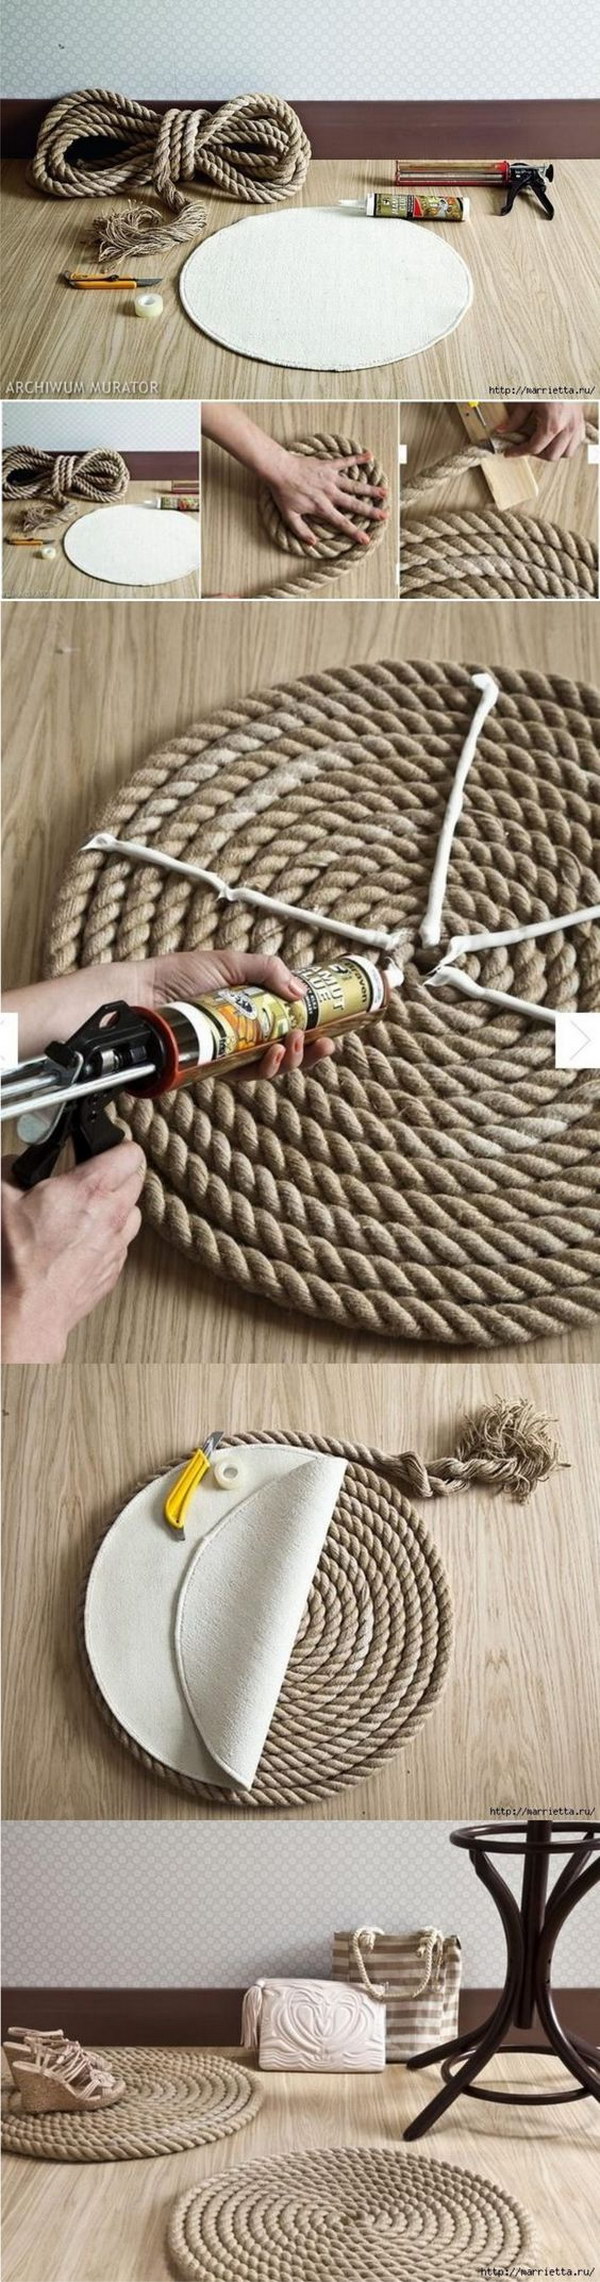 DIY Rope Rug 